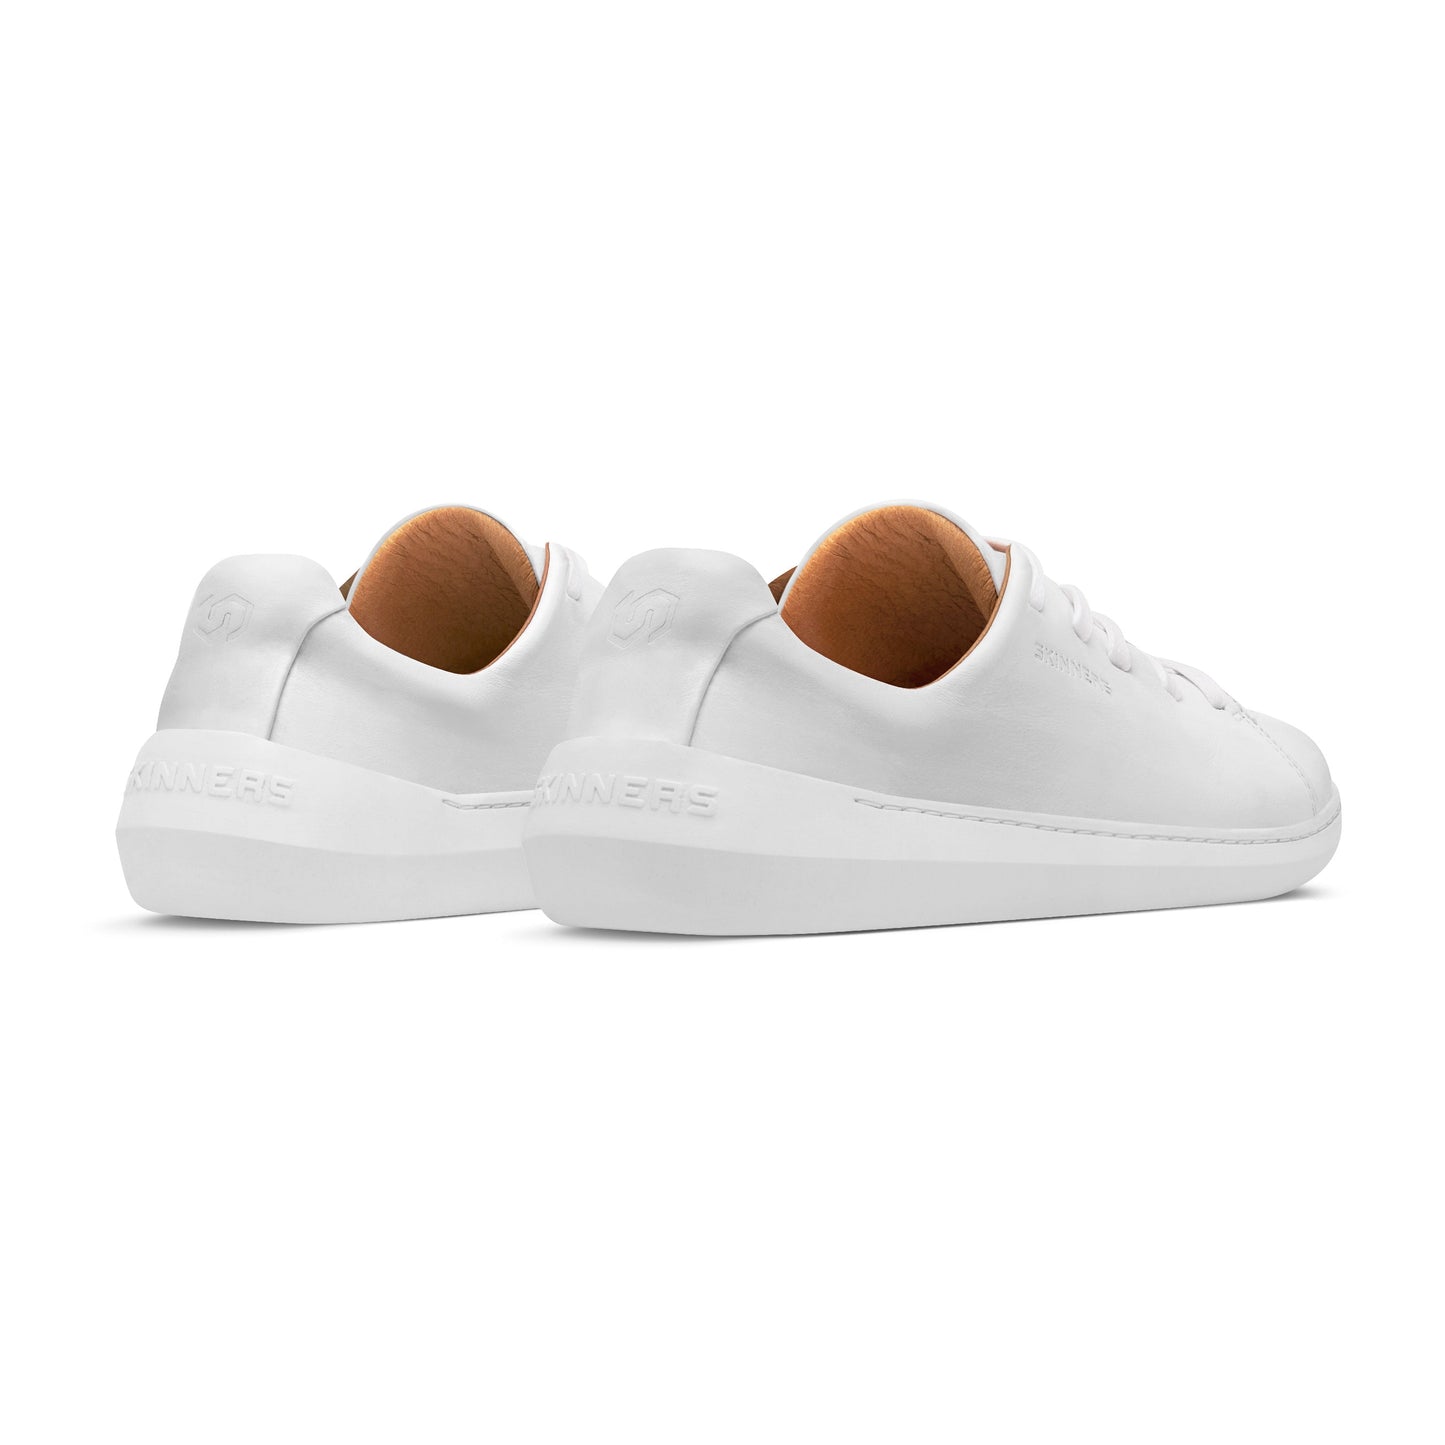 Mærkbare Walker barfods sneakers til kvinder og mænd i farven white / white, bagfra